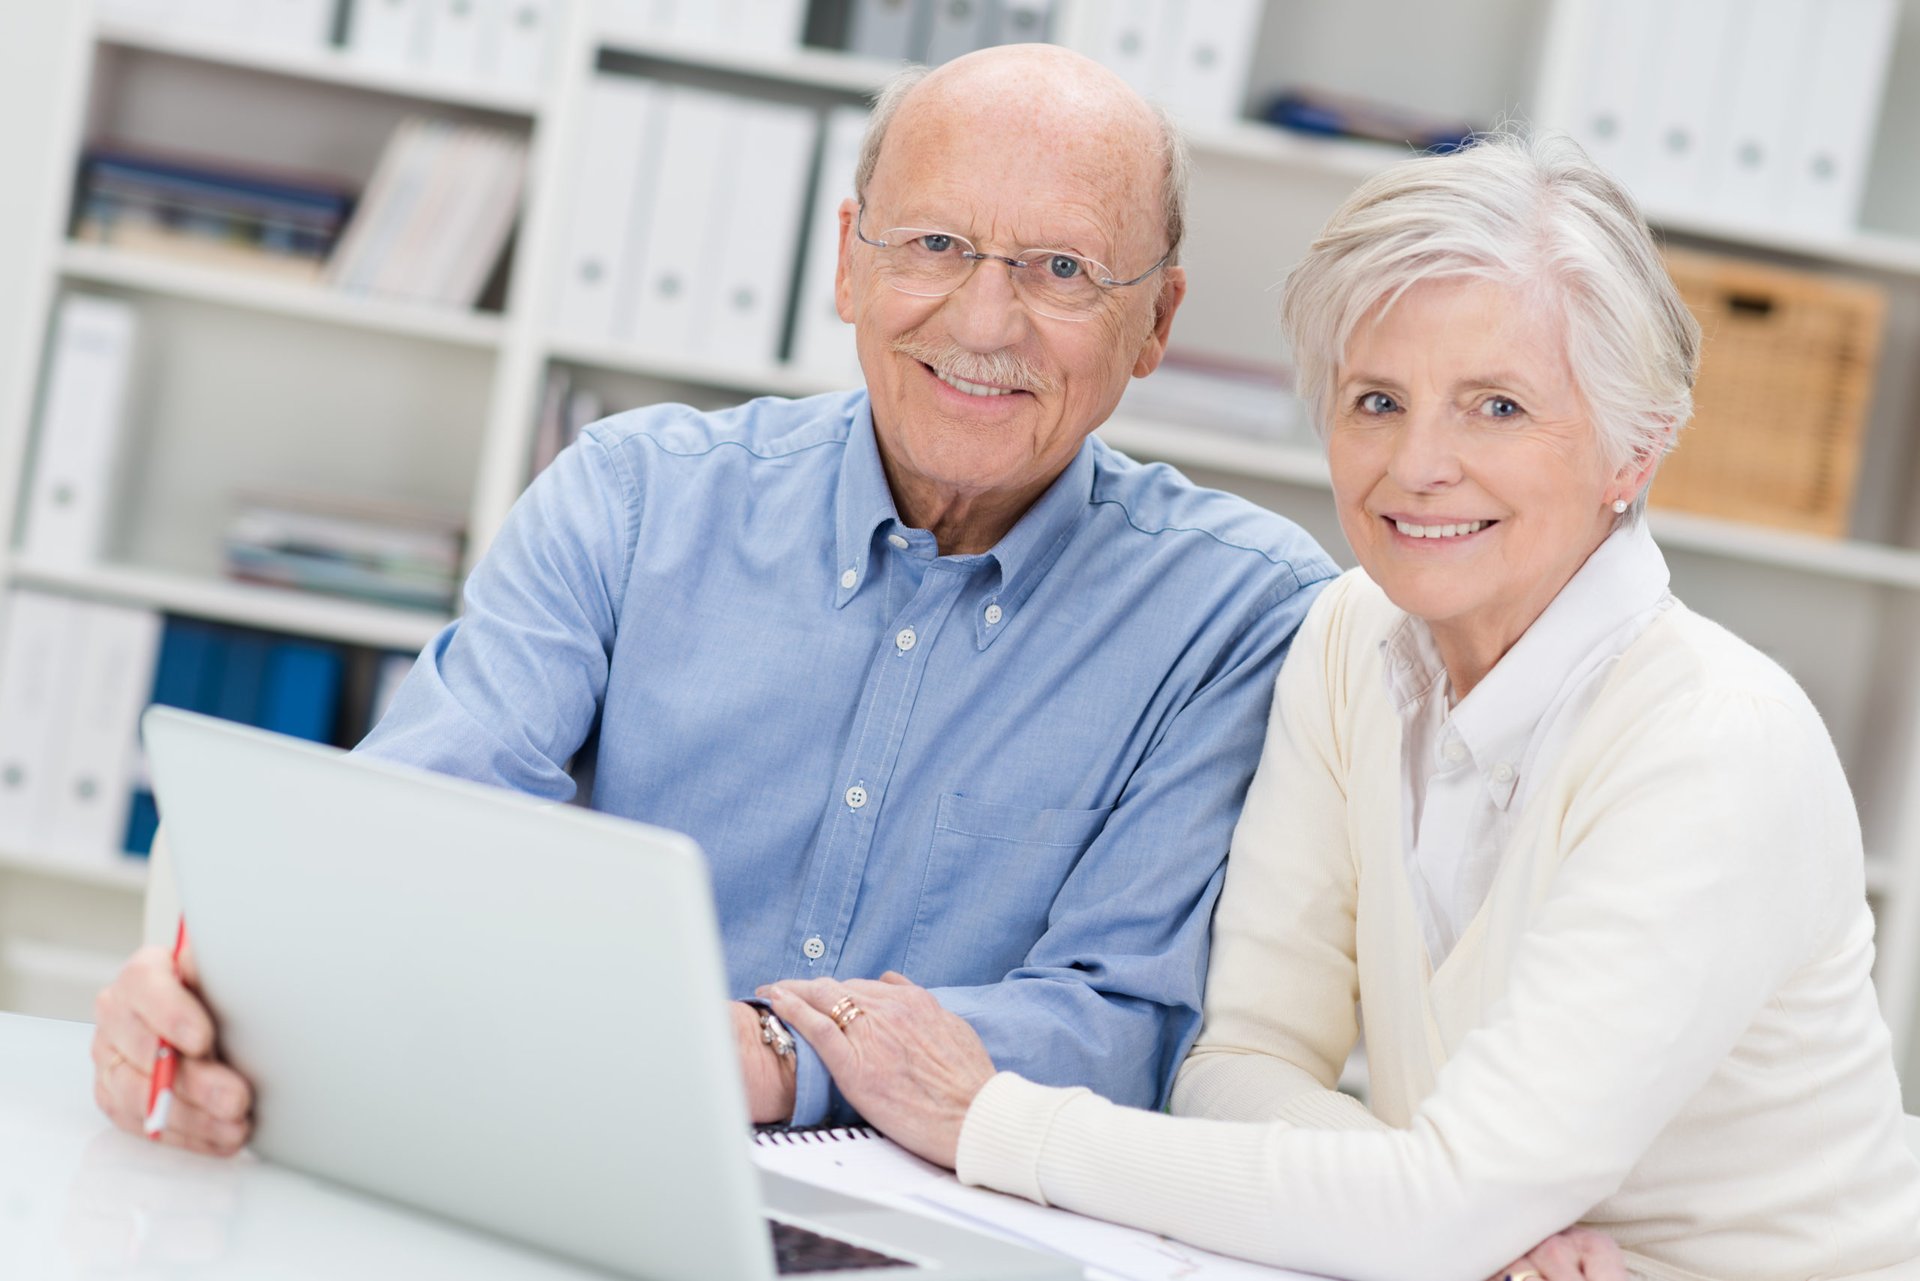 Бесплатные операций пенсионерам. Пожилые люди за компом. Пожилые люди и компьютер. Счастливые пенсионеры. Пожилой человек с ноутбуком.